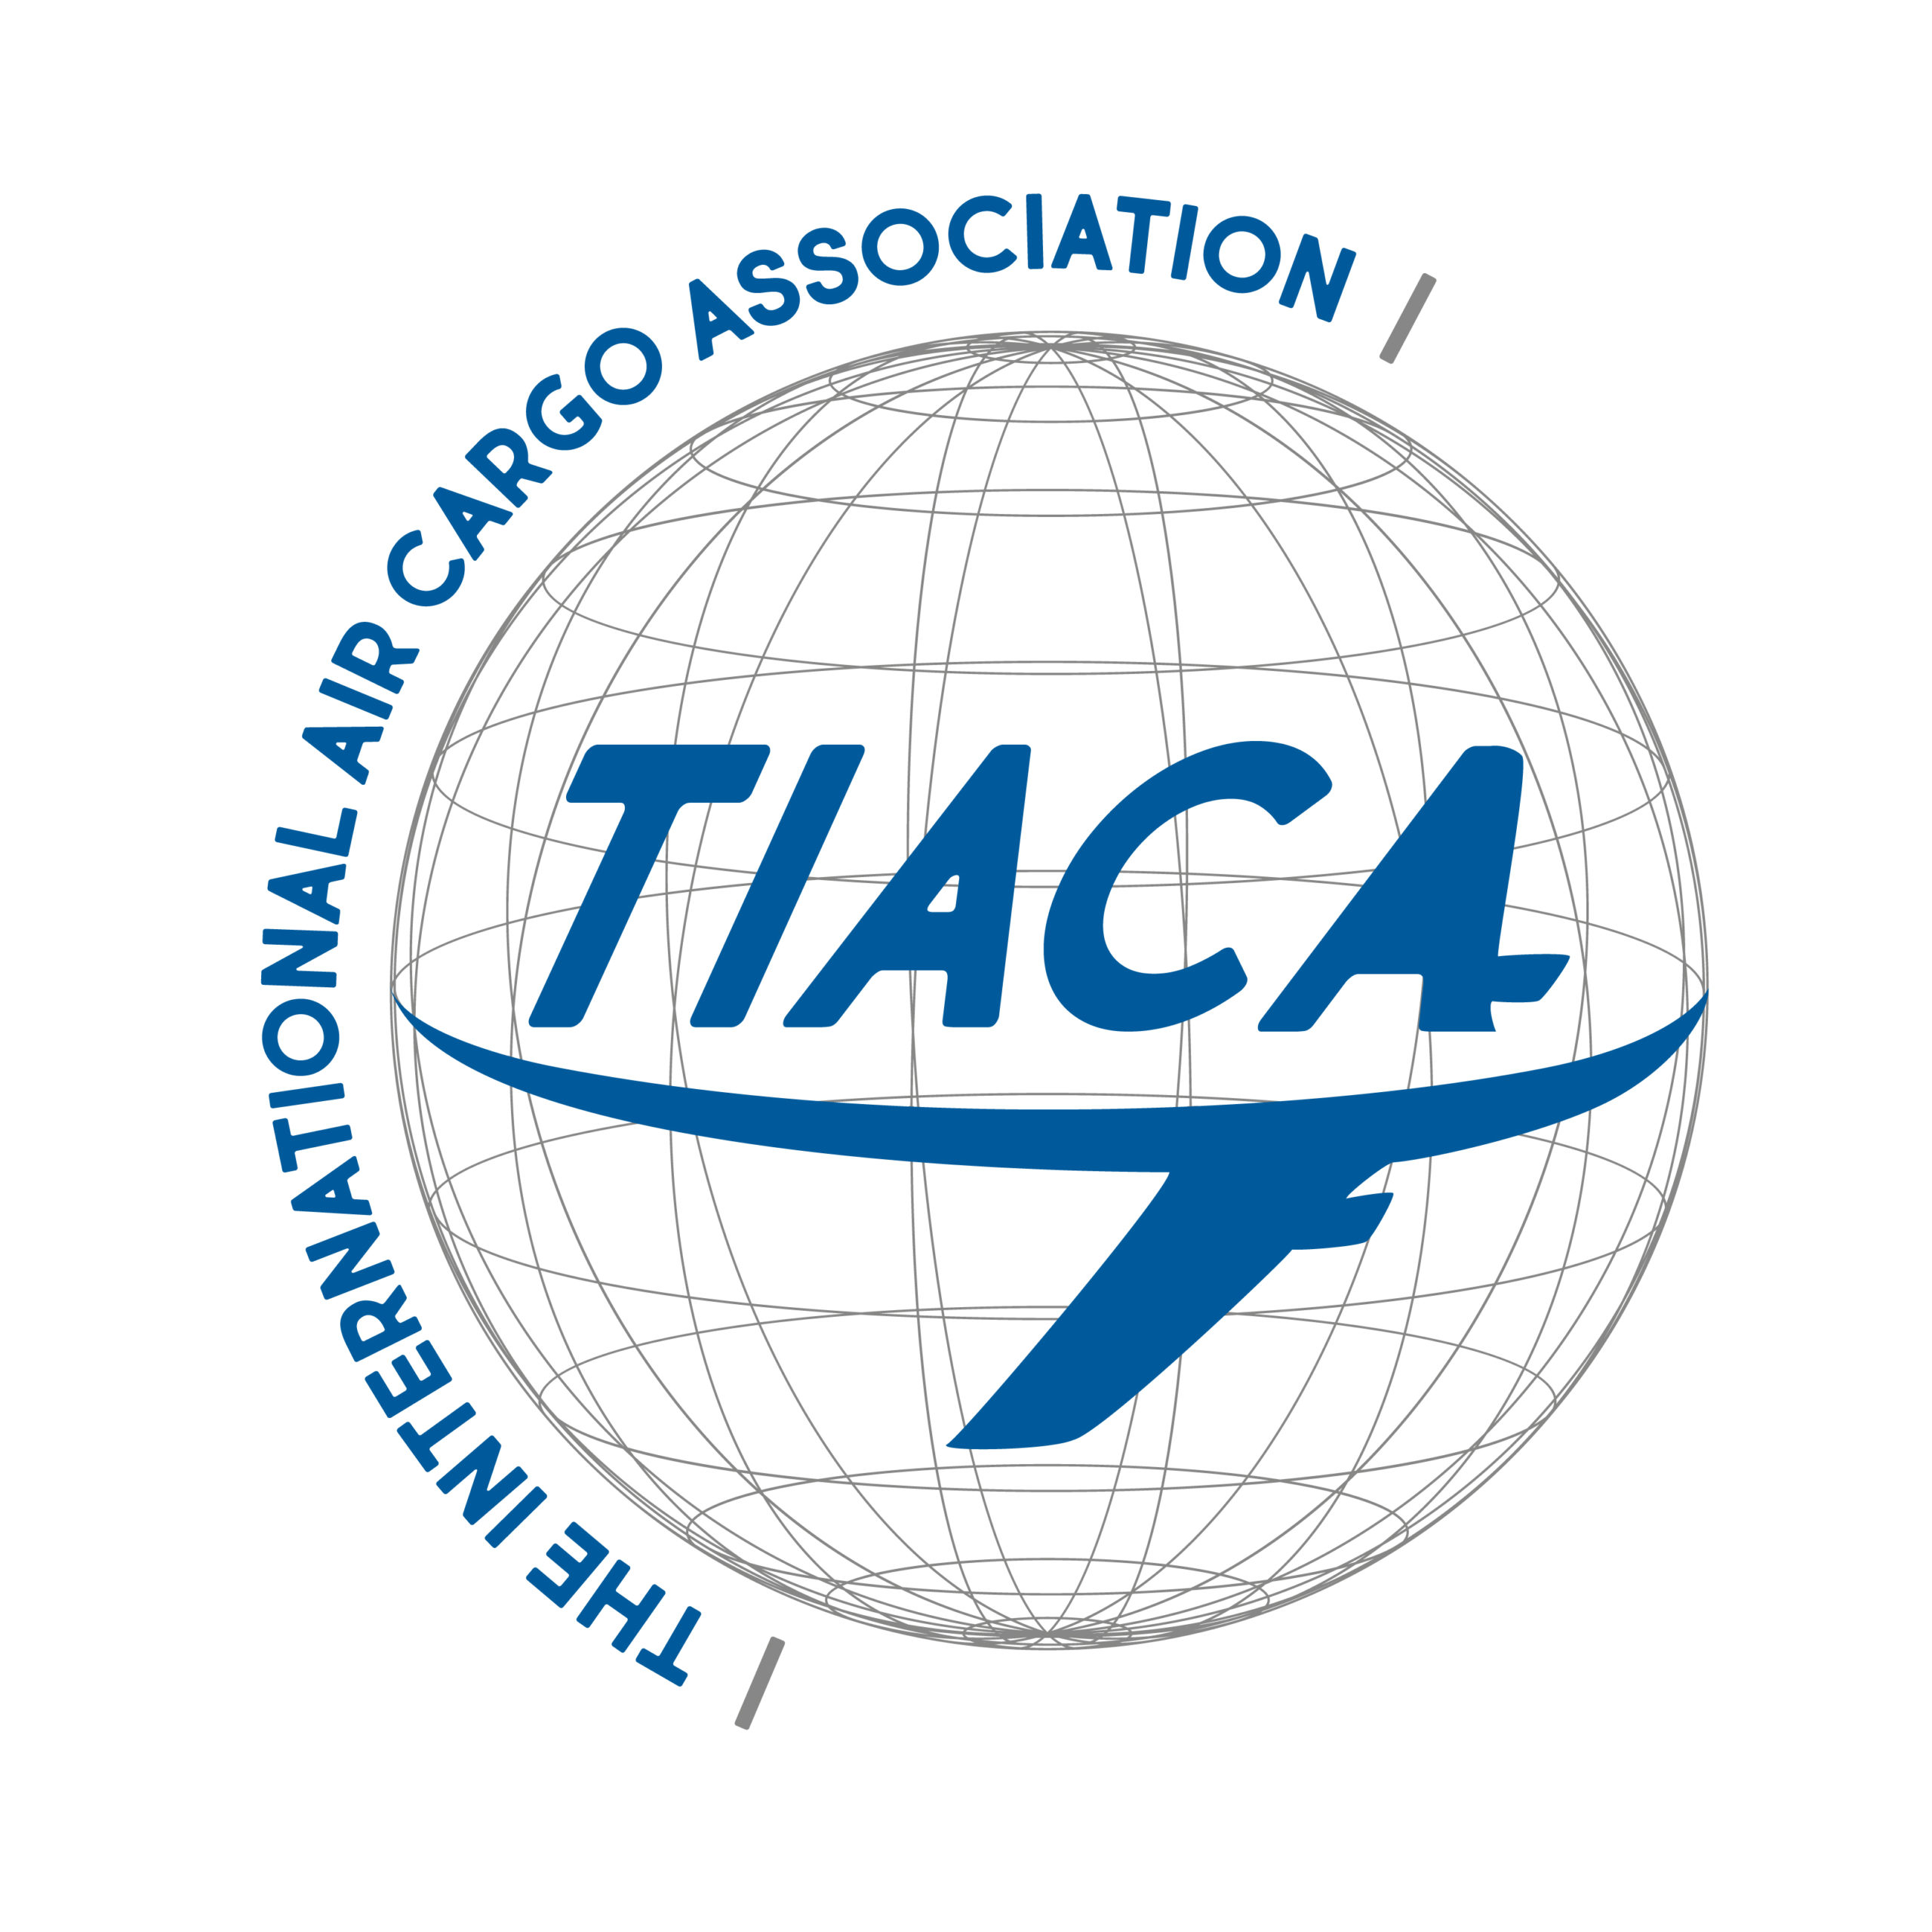 TIACA's newly designed logo